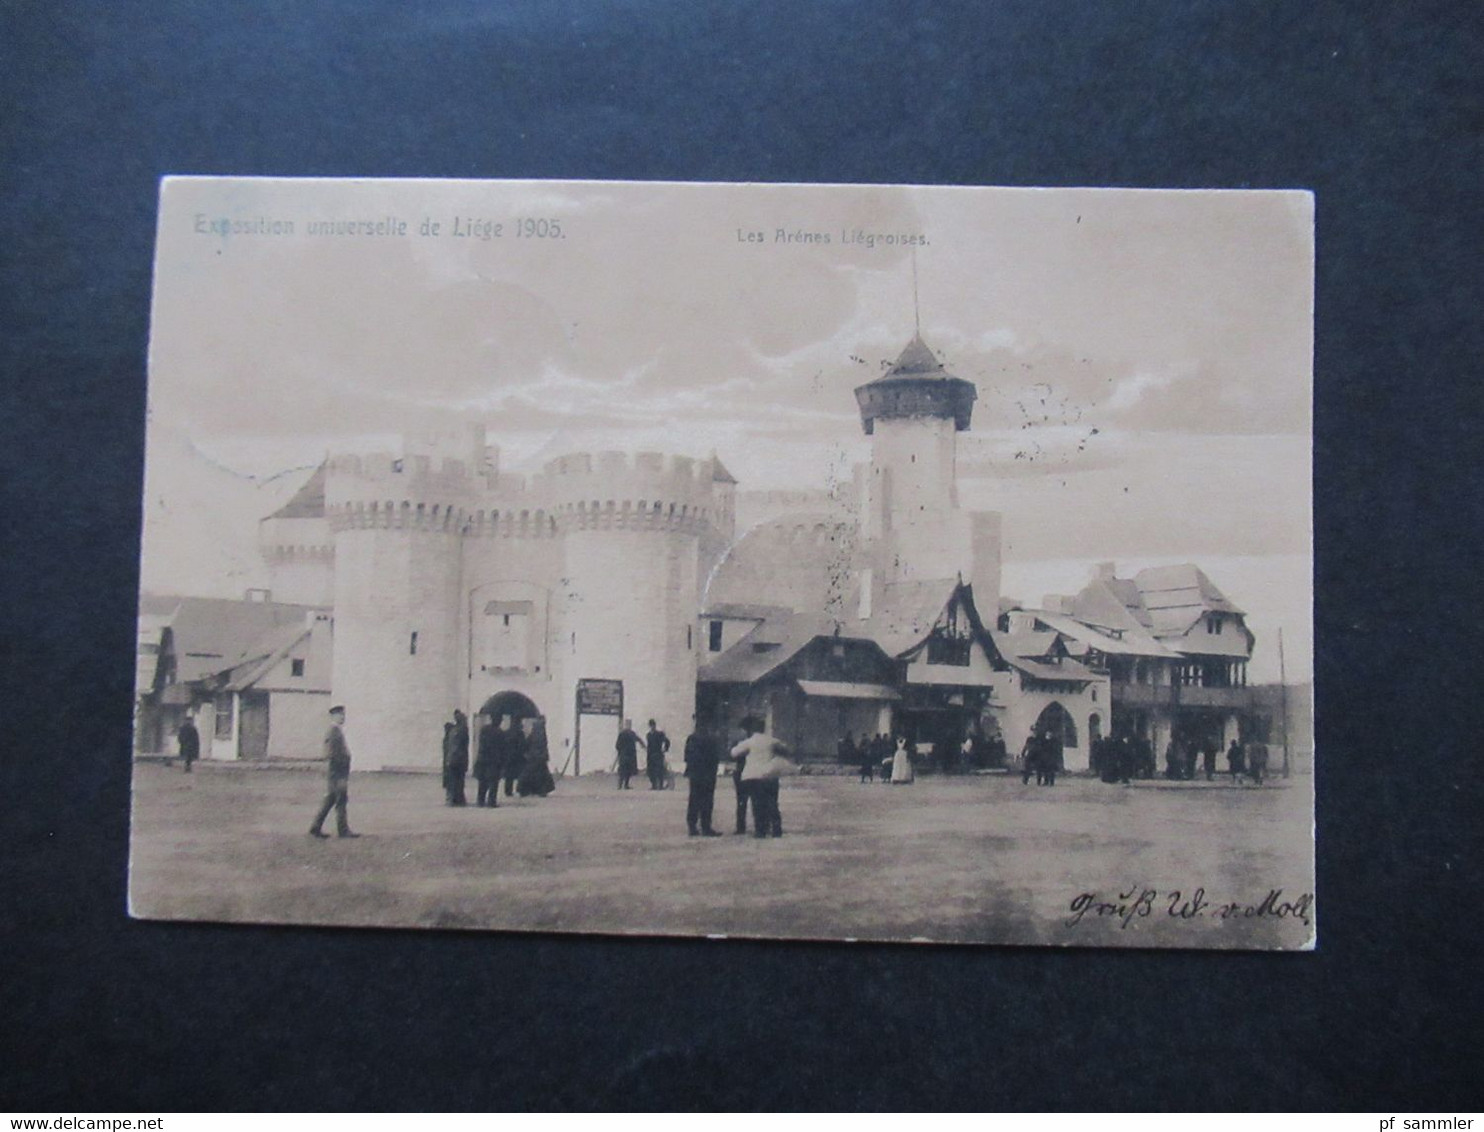 Belgien 1905 Exposition Universelle De Liege Les Arenes Liegeoises Weltausstellung Stempel Annevoie - Cöln - Ausstellungen